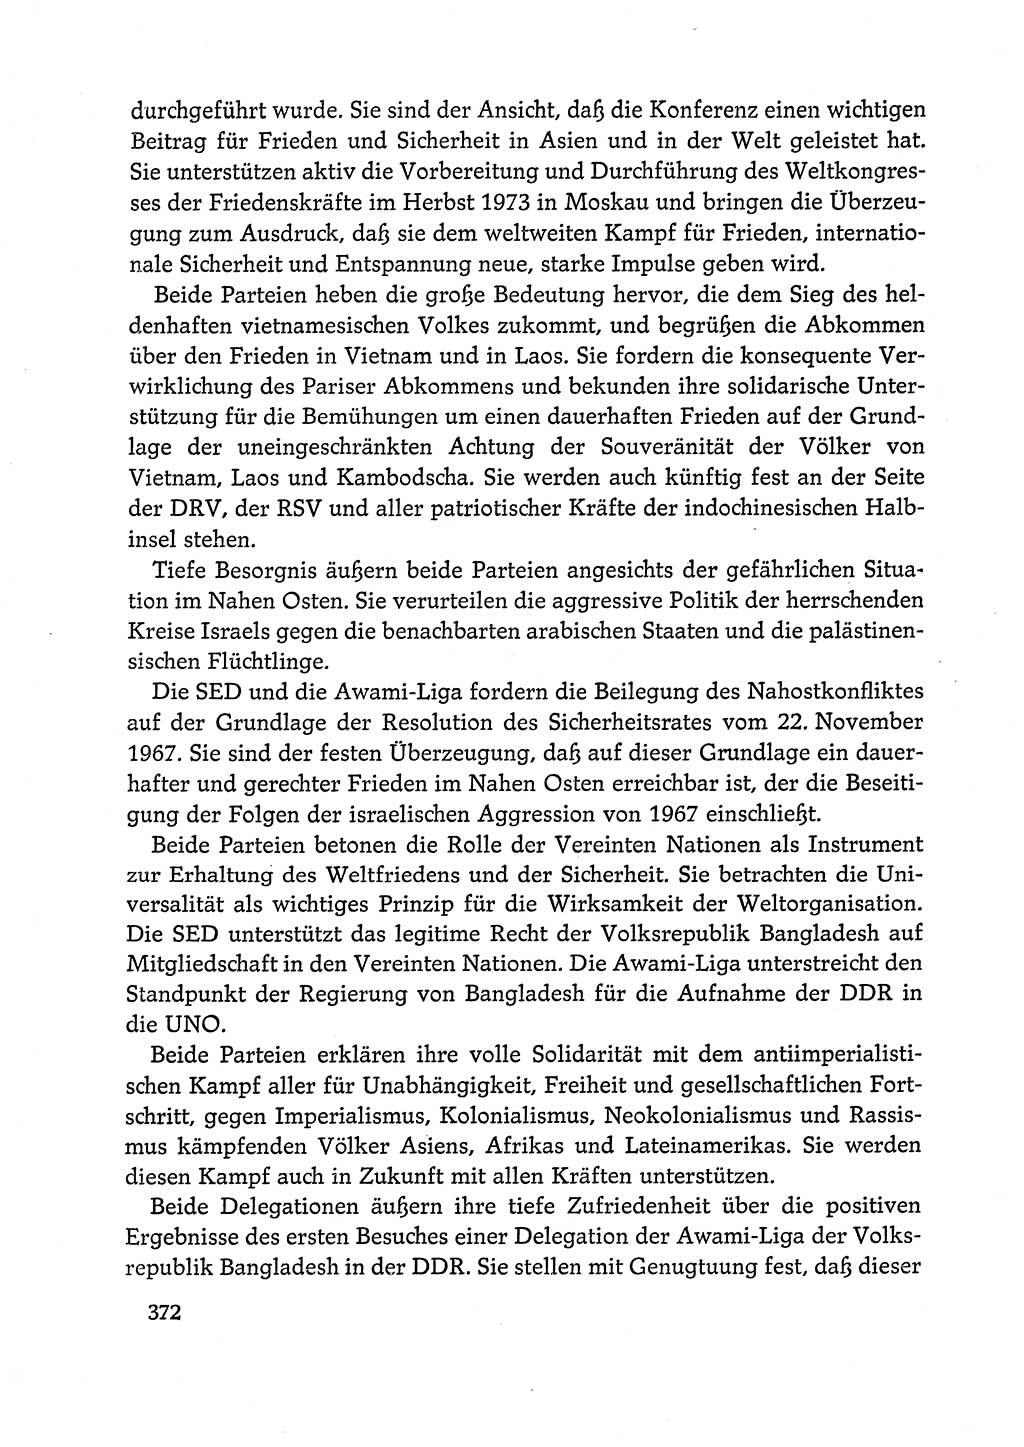 Dokumente der Sozialistischen Einheitspartei Deutschlands (SED) [Deutsche Demokratische Republik (DDR)] 1972-1973, Seite 372 (Dok. SED DDR 1972-1973, S. 372)